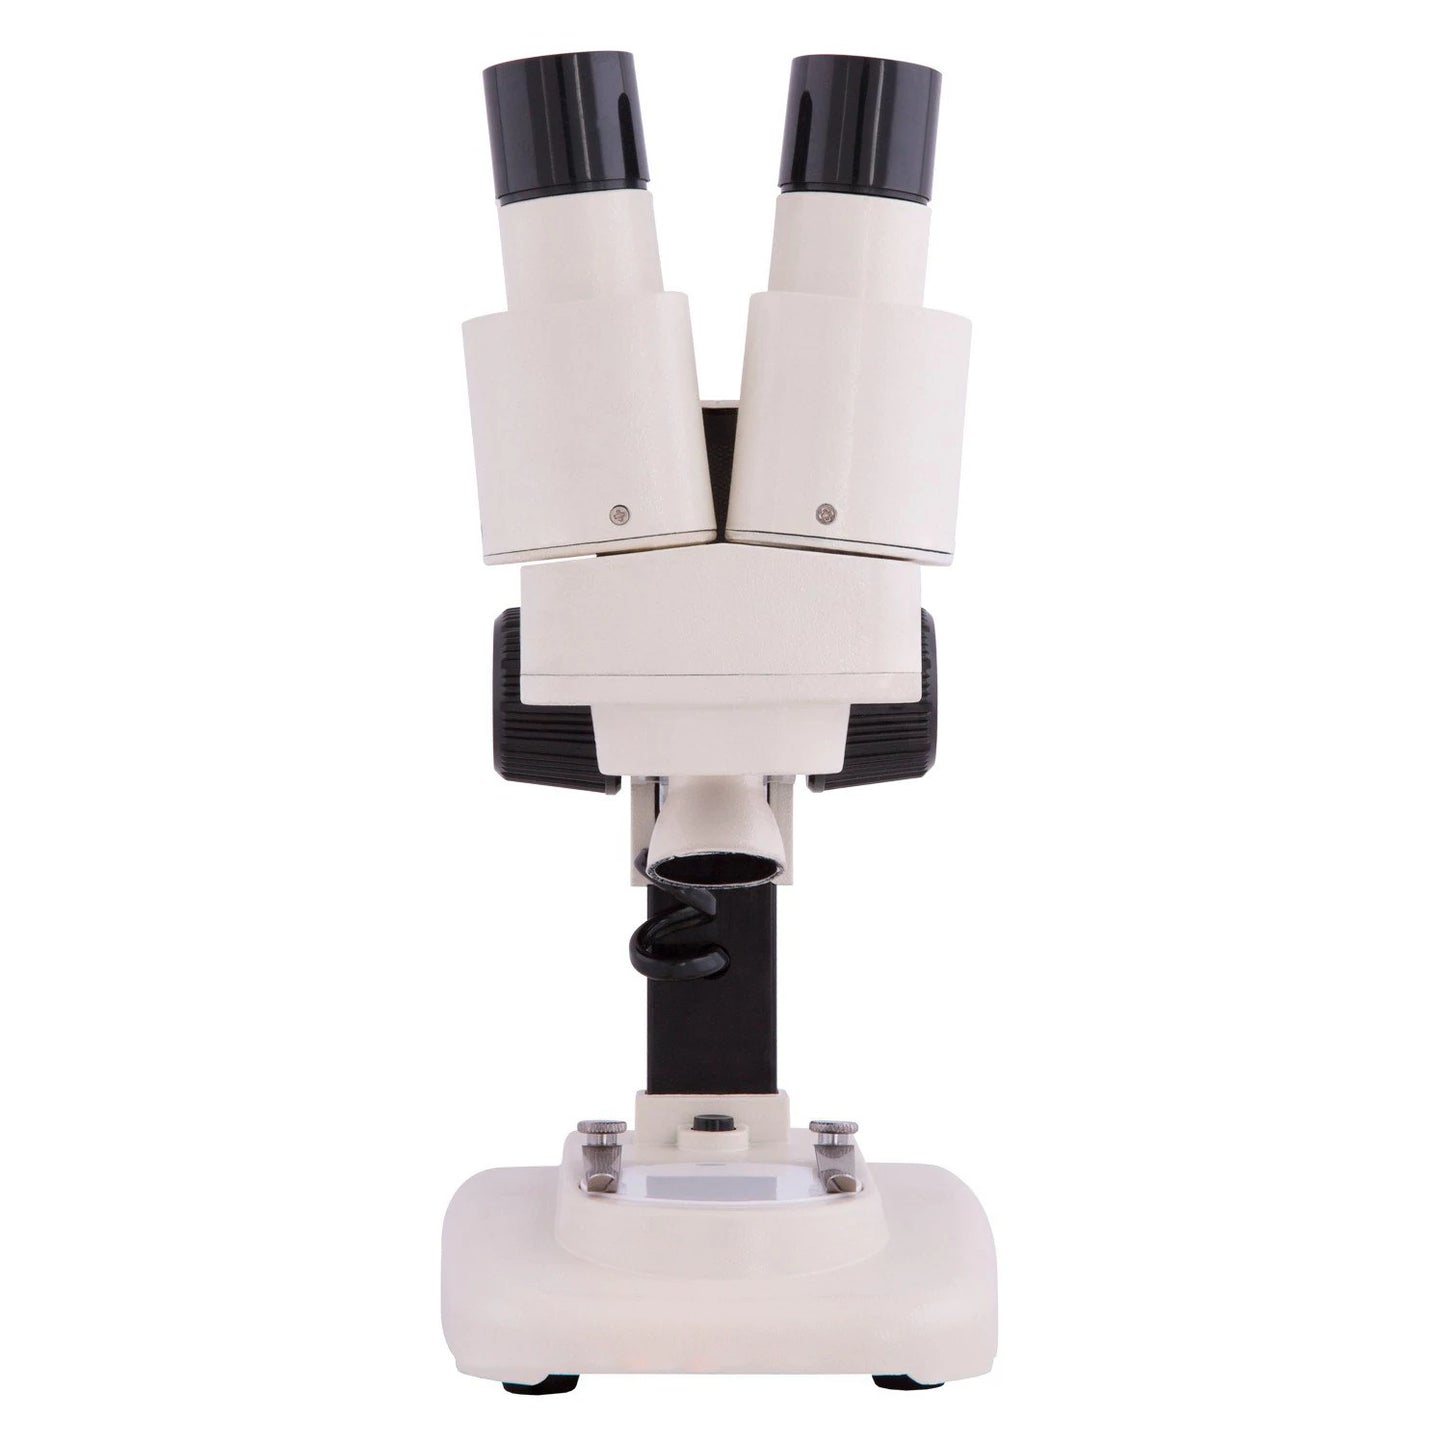 Explore One 20x Microscope 88-52000